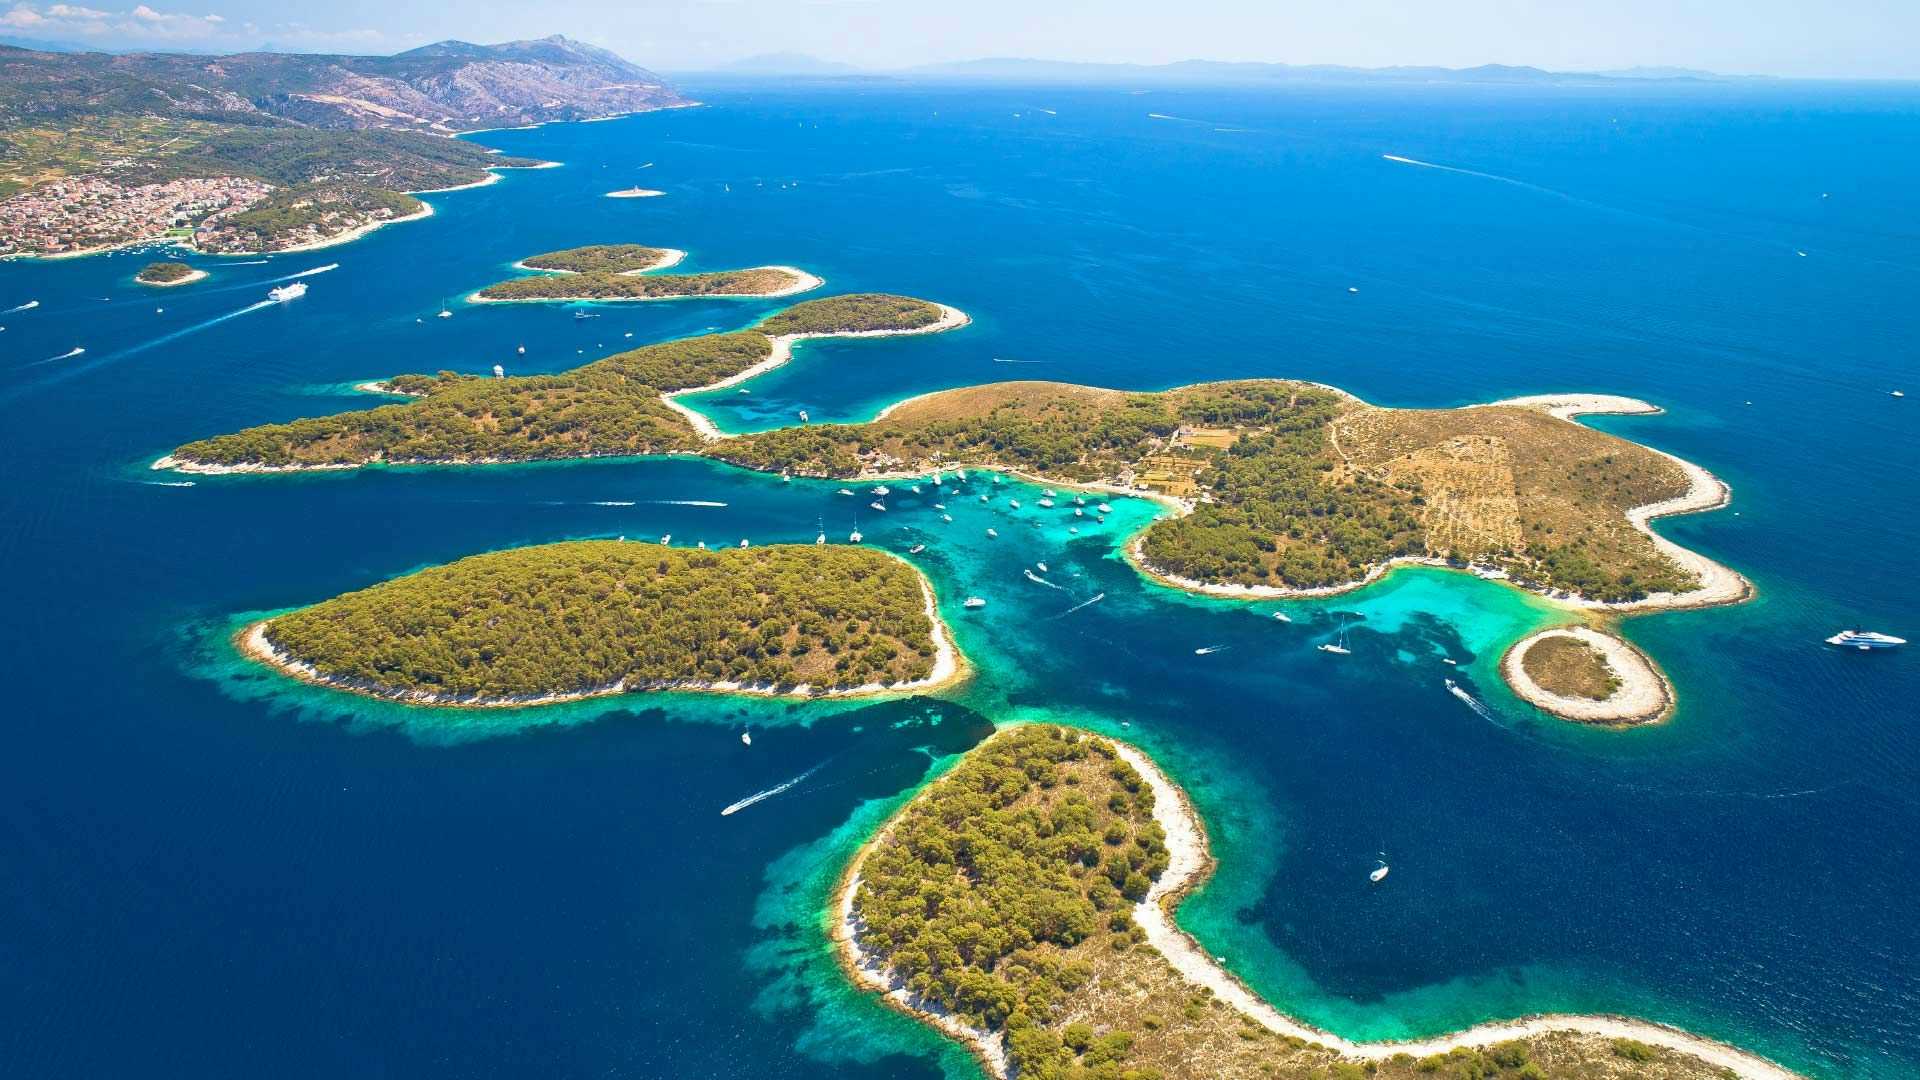 The Pakleni Islands in Croatia